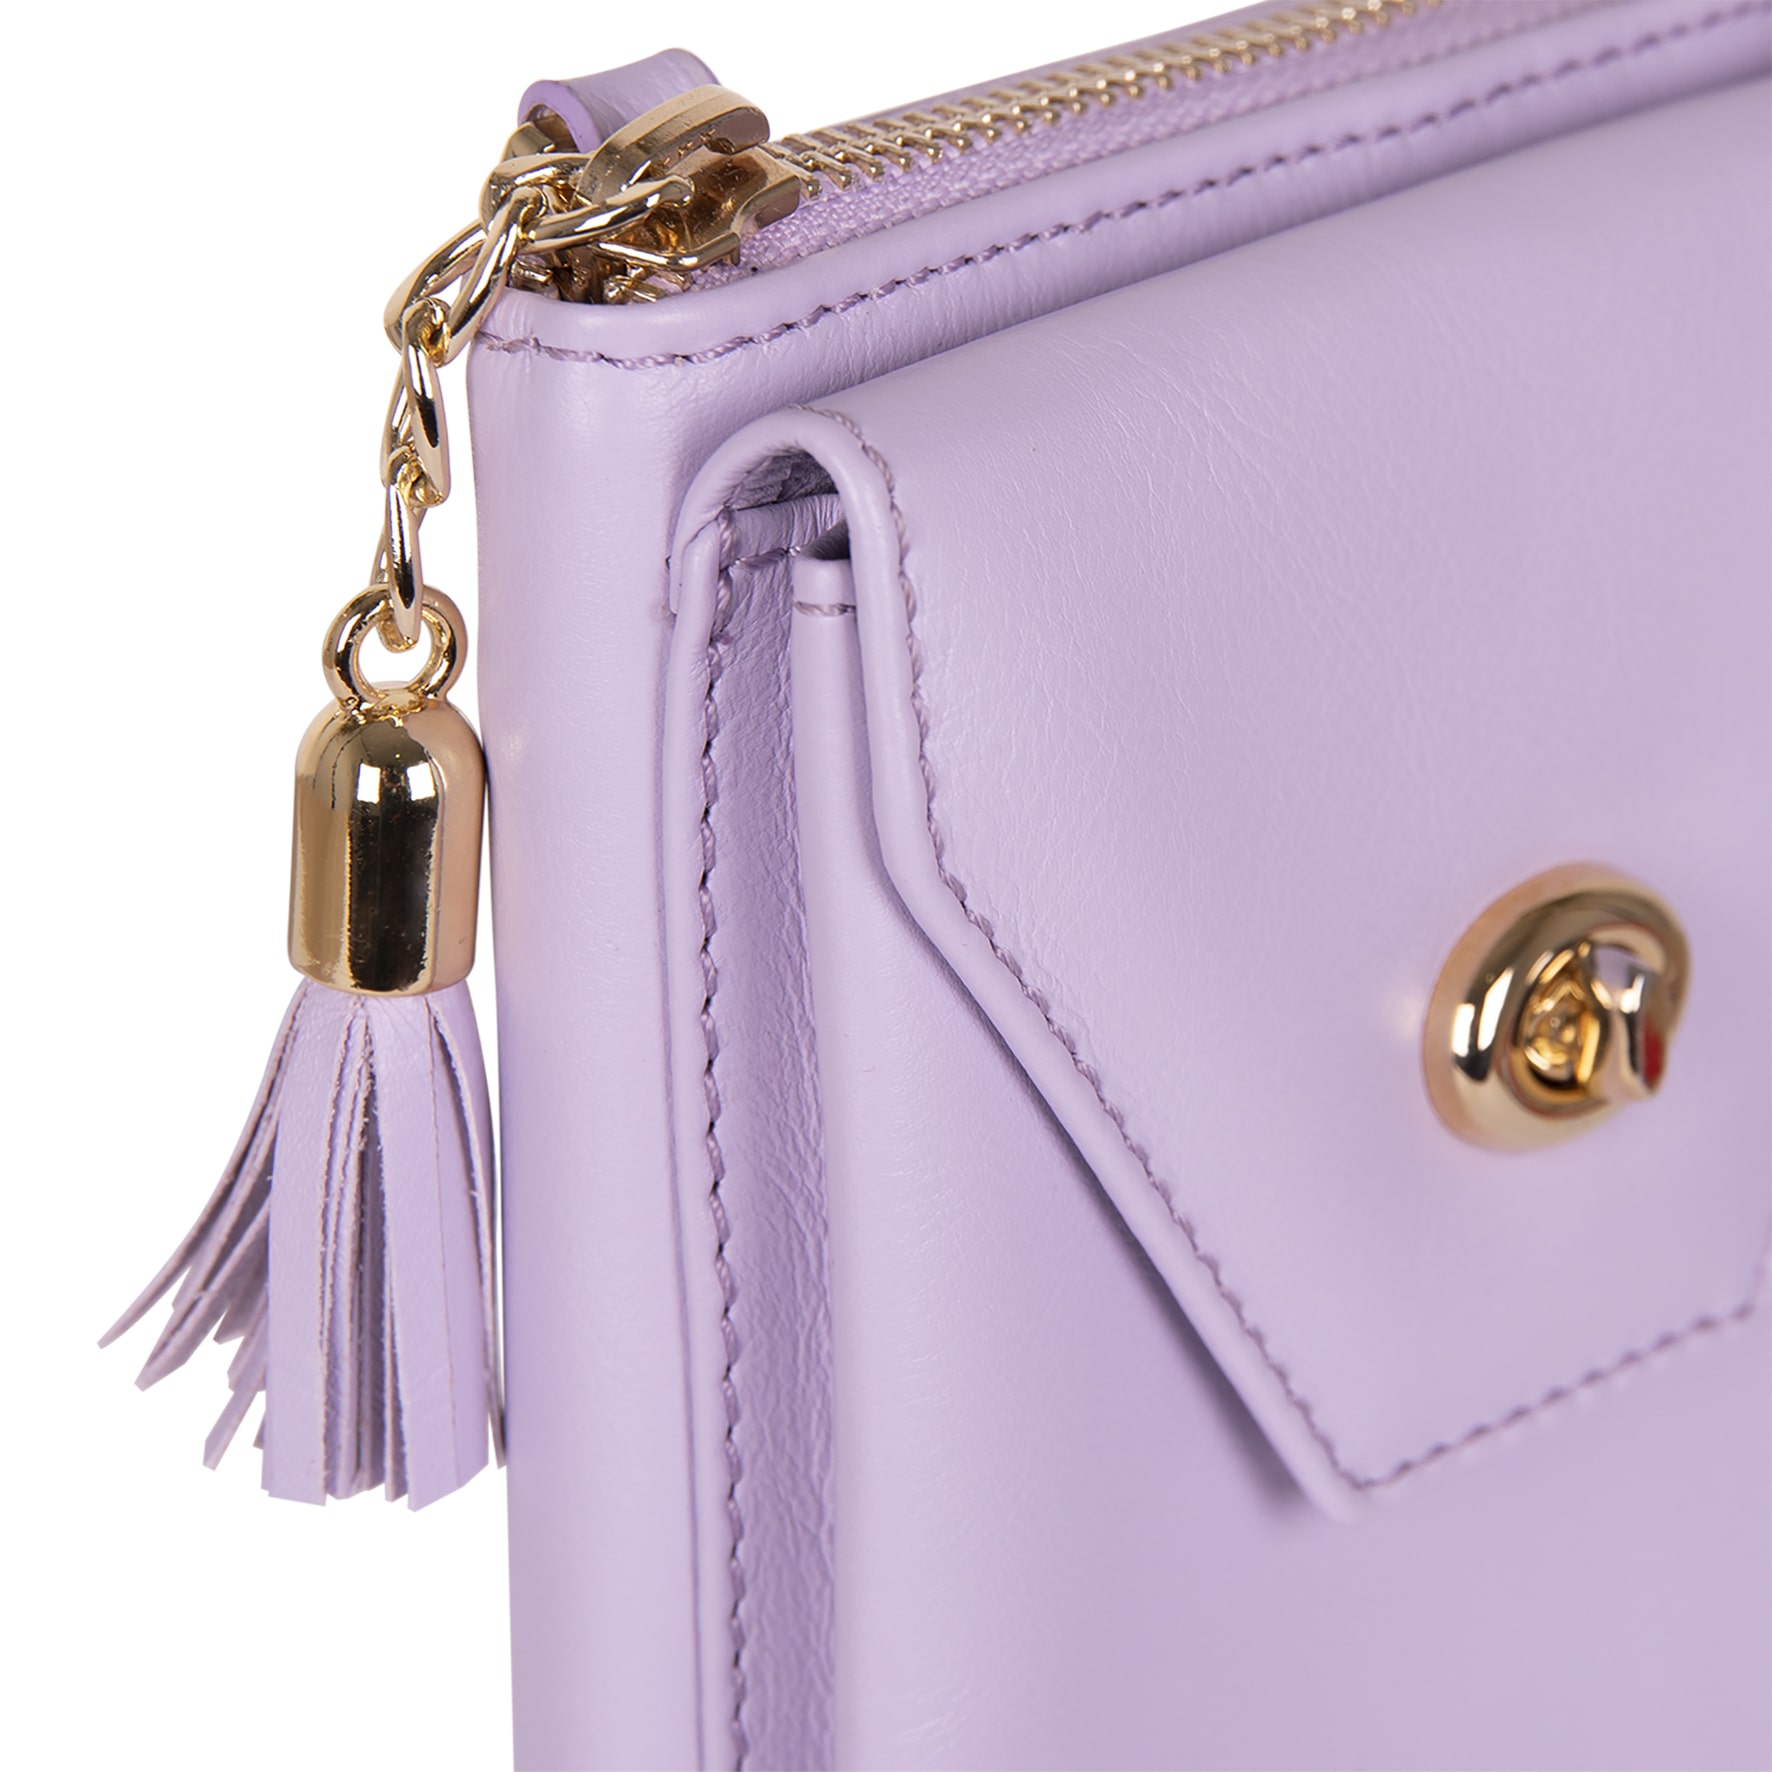 detalles Lily bolso de cuero para mujer y smartphone en color lila